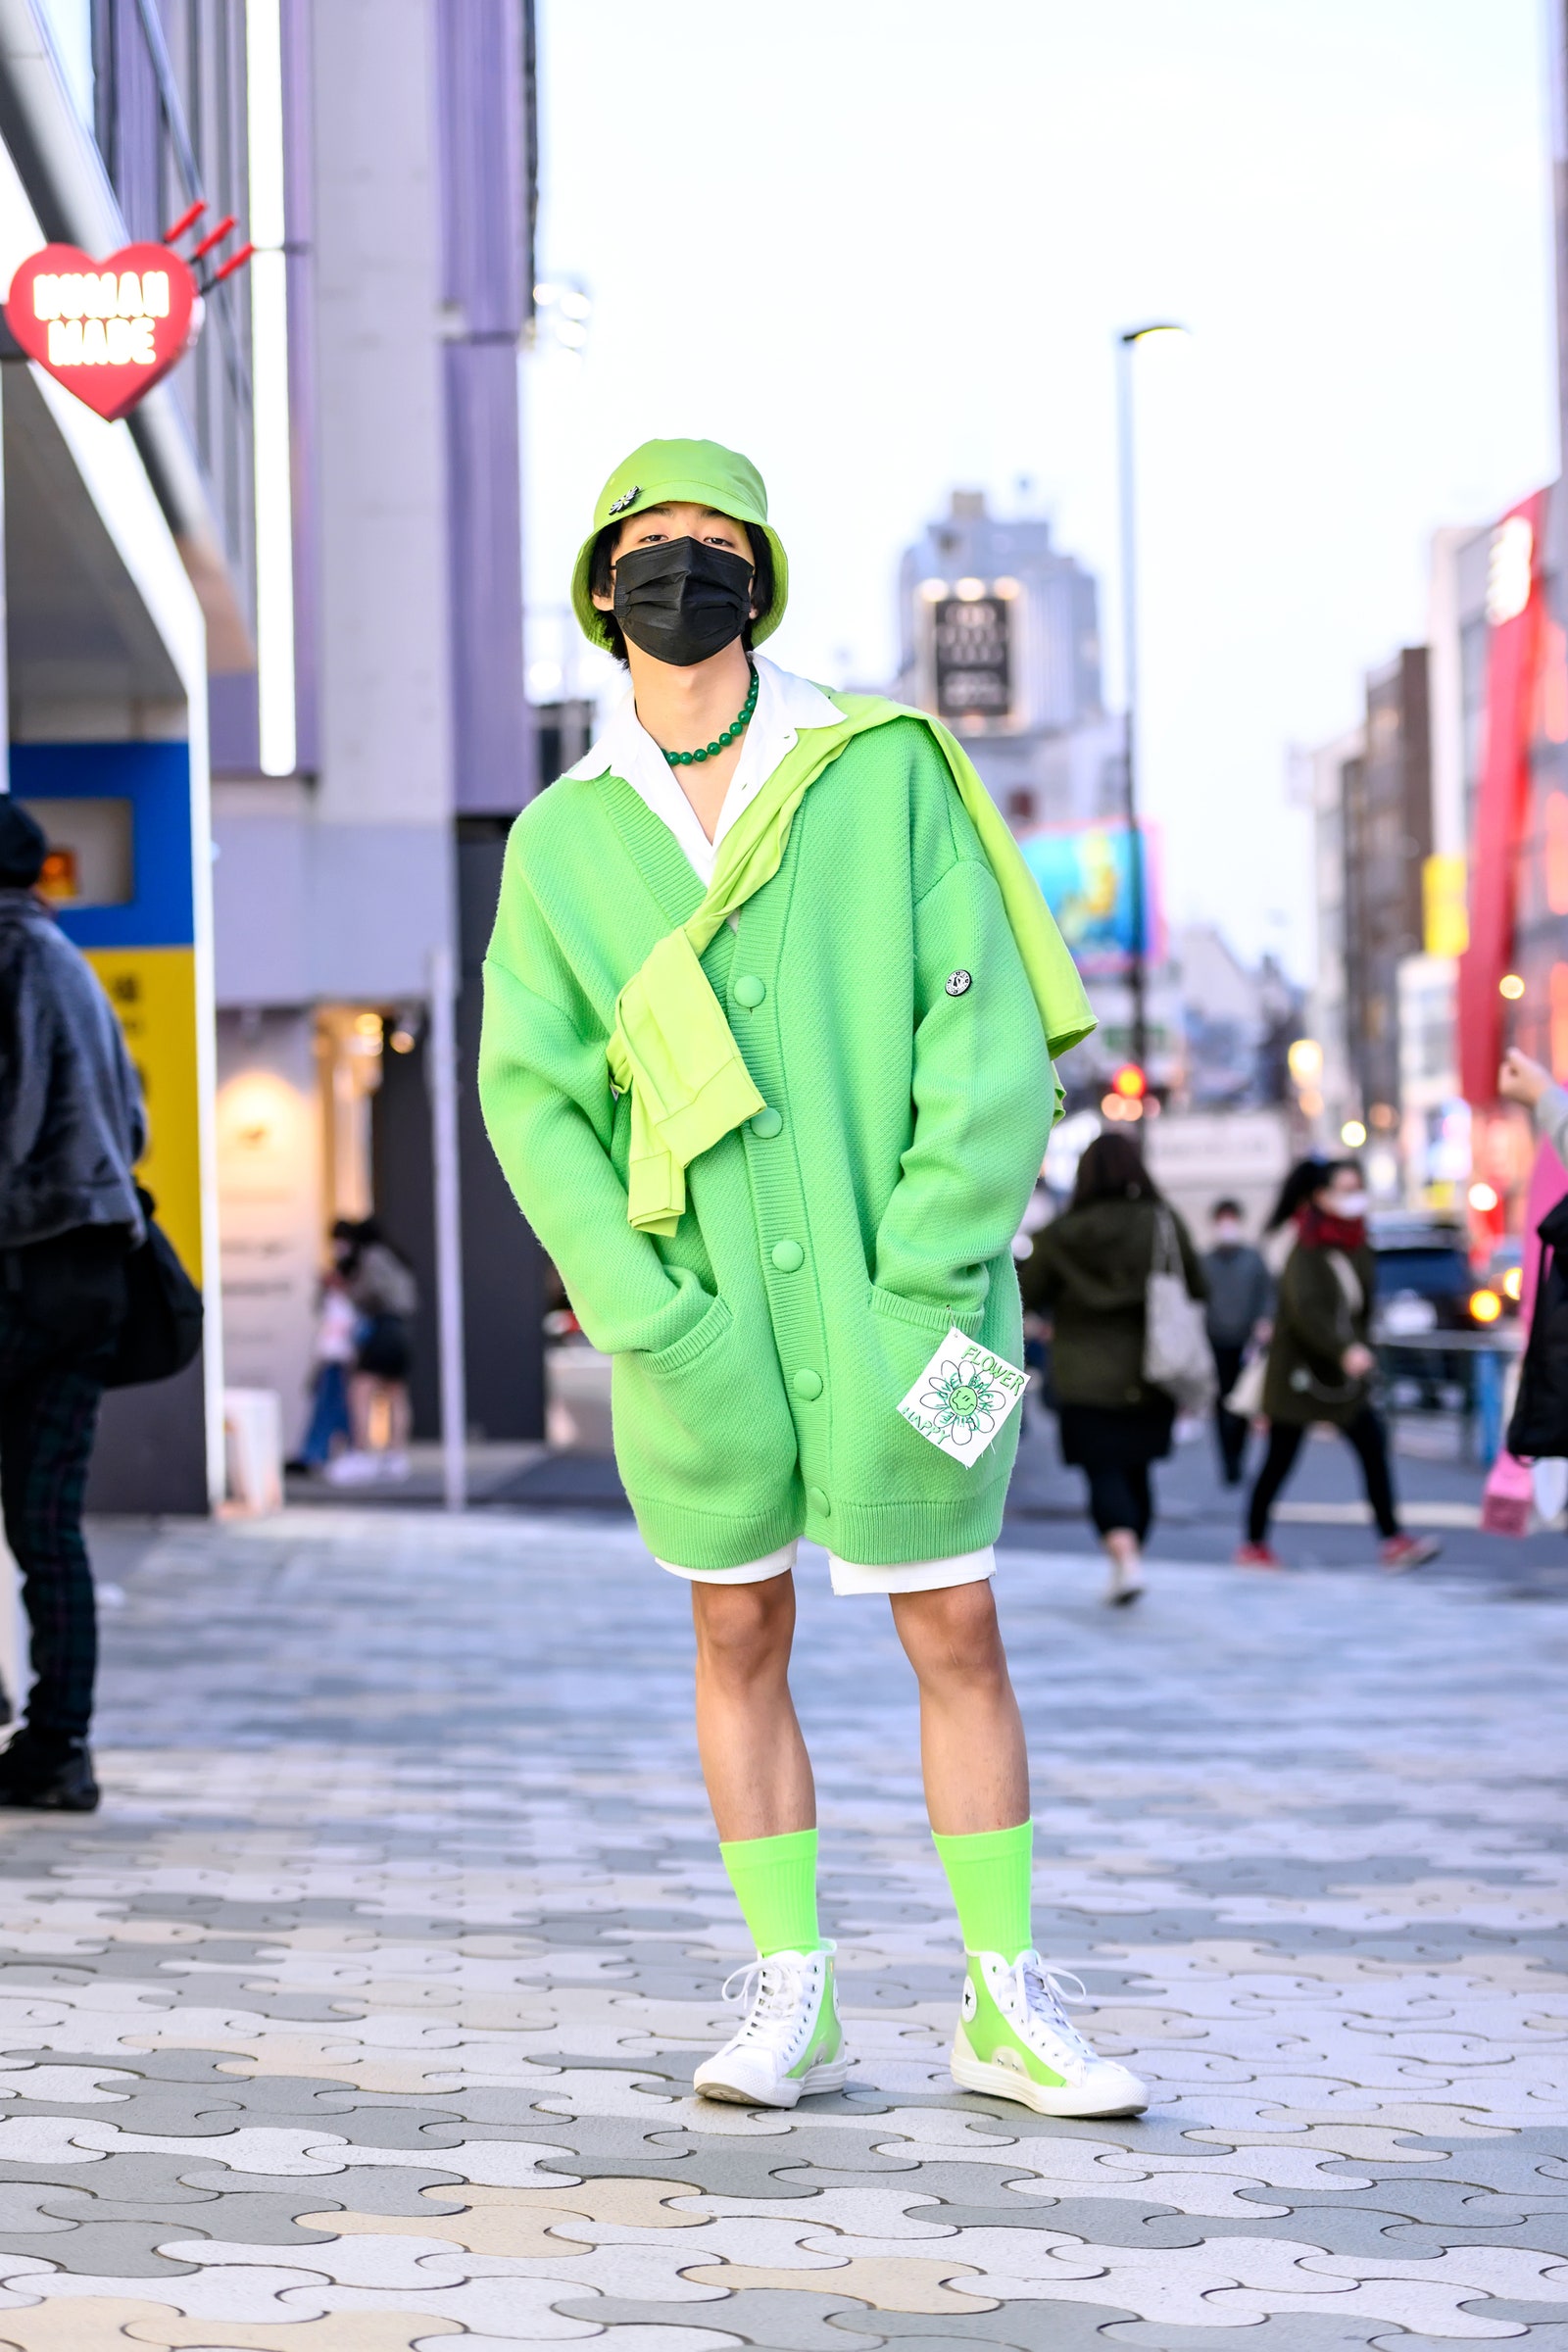 'Dị biệt' chính là từ khóa dùng để miêu tả xu hướng thời trang tại Tokyo, không chỉ trong khuôn khổ Tuần lễ thời trang.